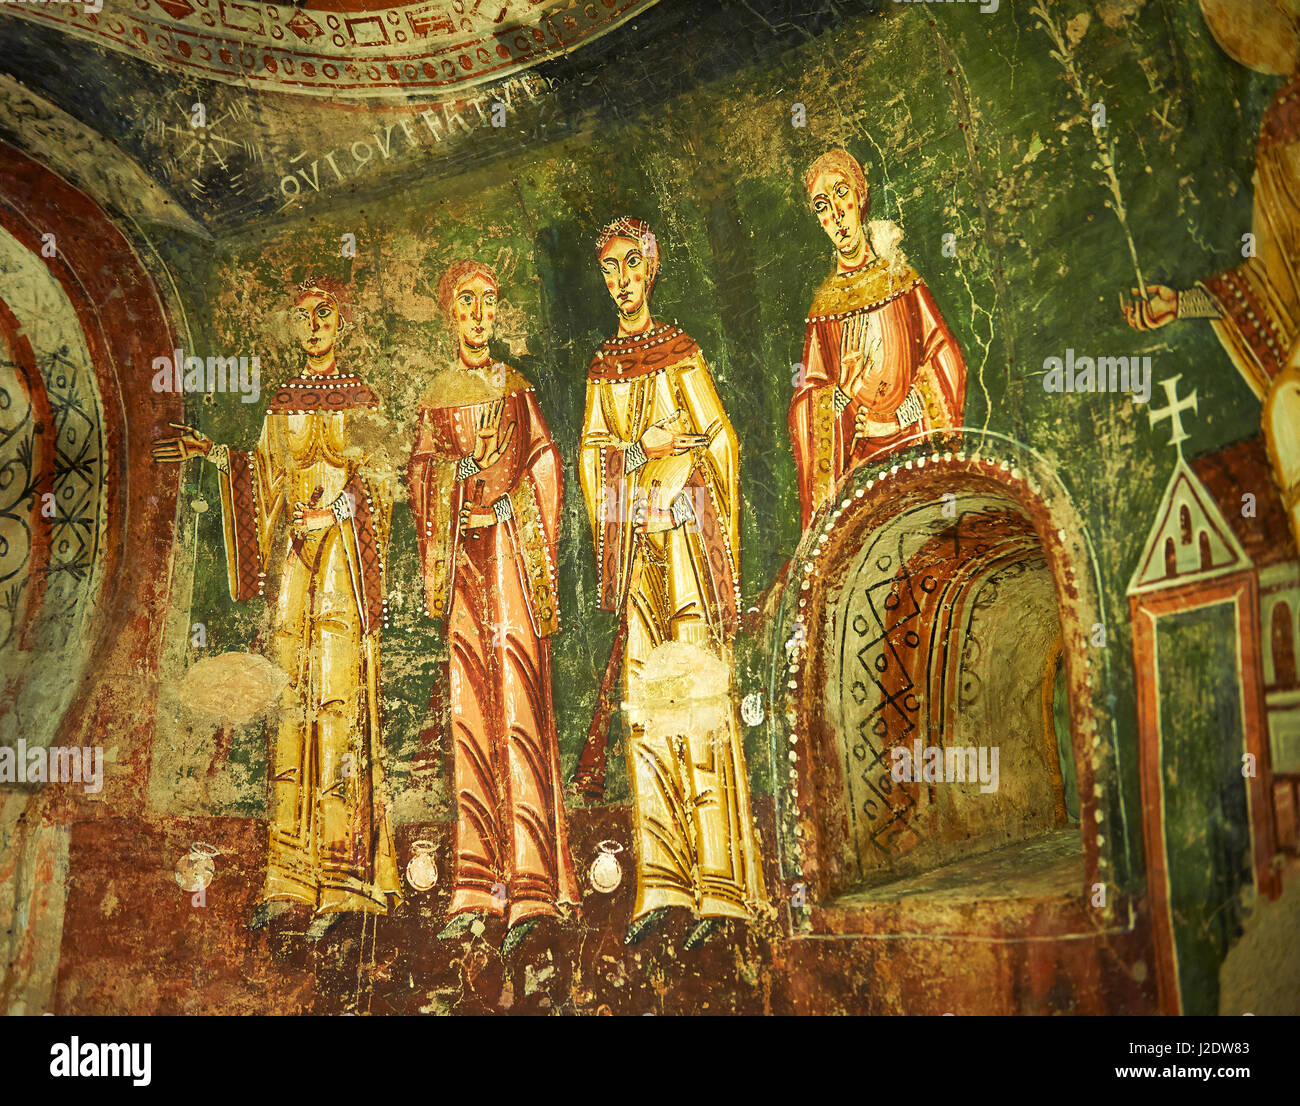 Undicesimo secolo affreschi romanici dell'abside laterale di Sant Quirze de Pedret mostrante la parabel delle dieci vergini dal Vangelo di san Matteo. Foto Stock